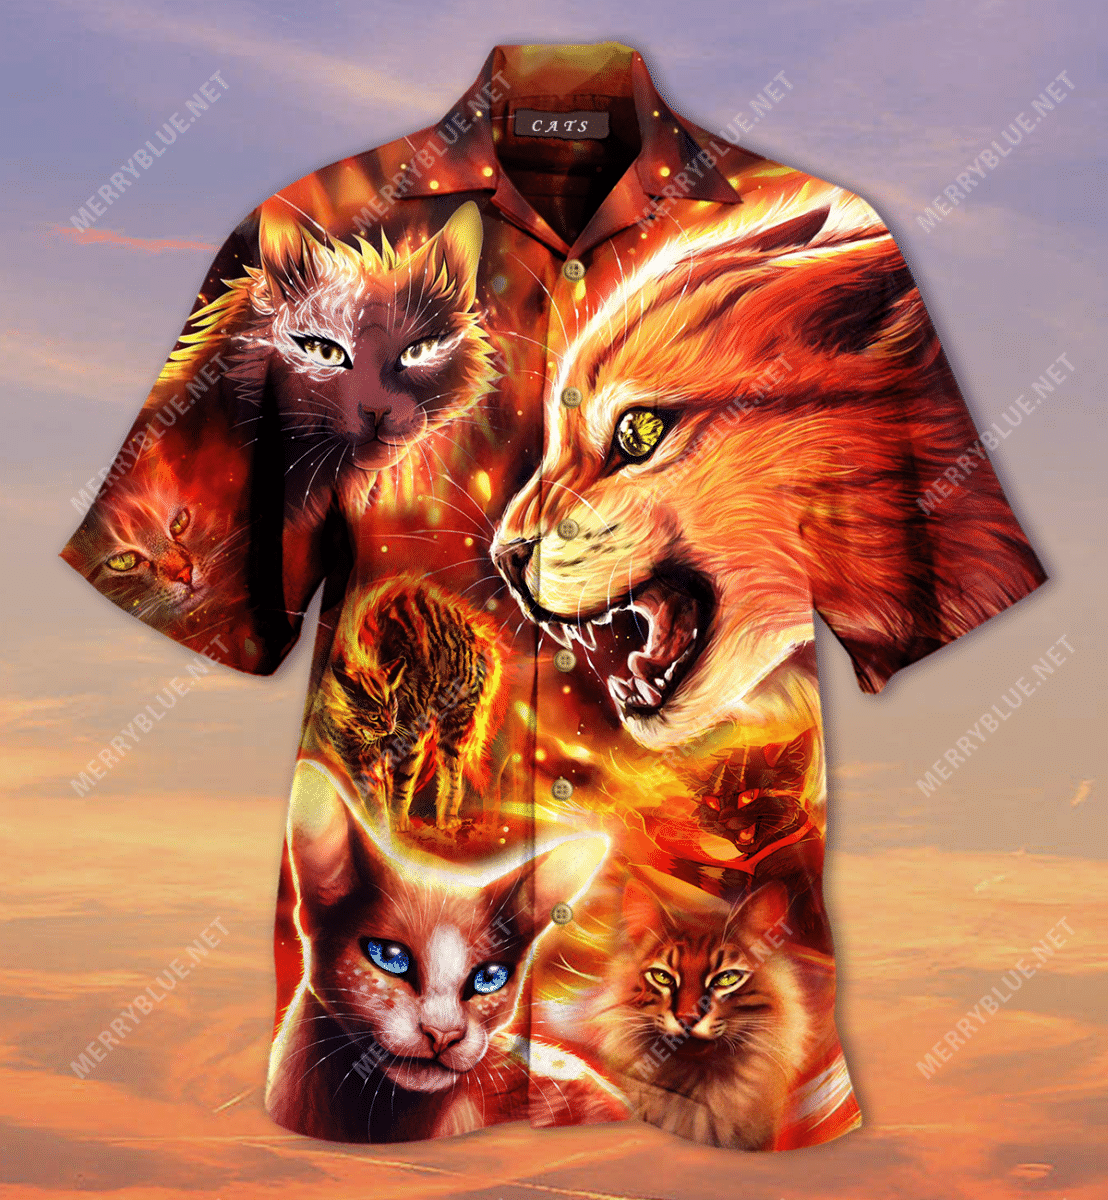 So Cool Warrior Cats Hawaiian Shirt